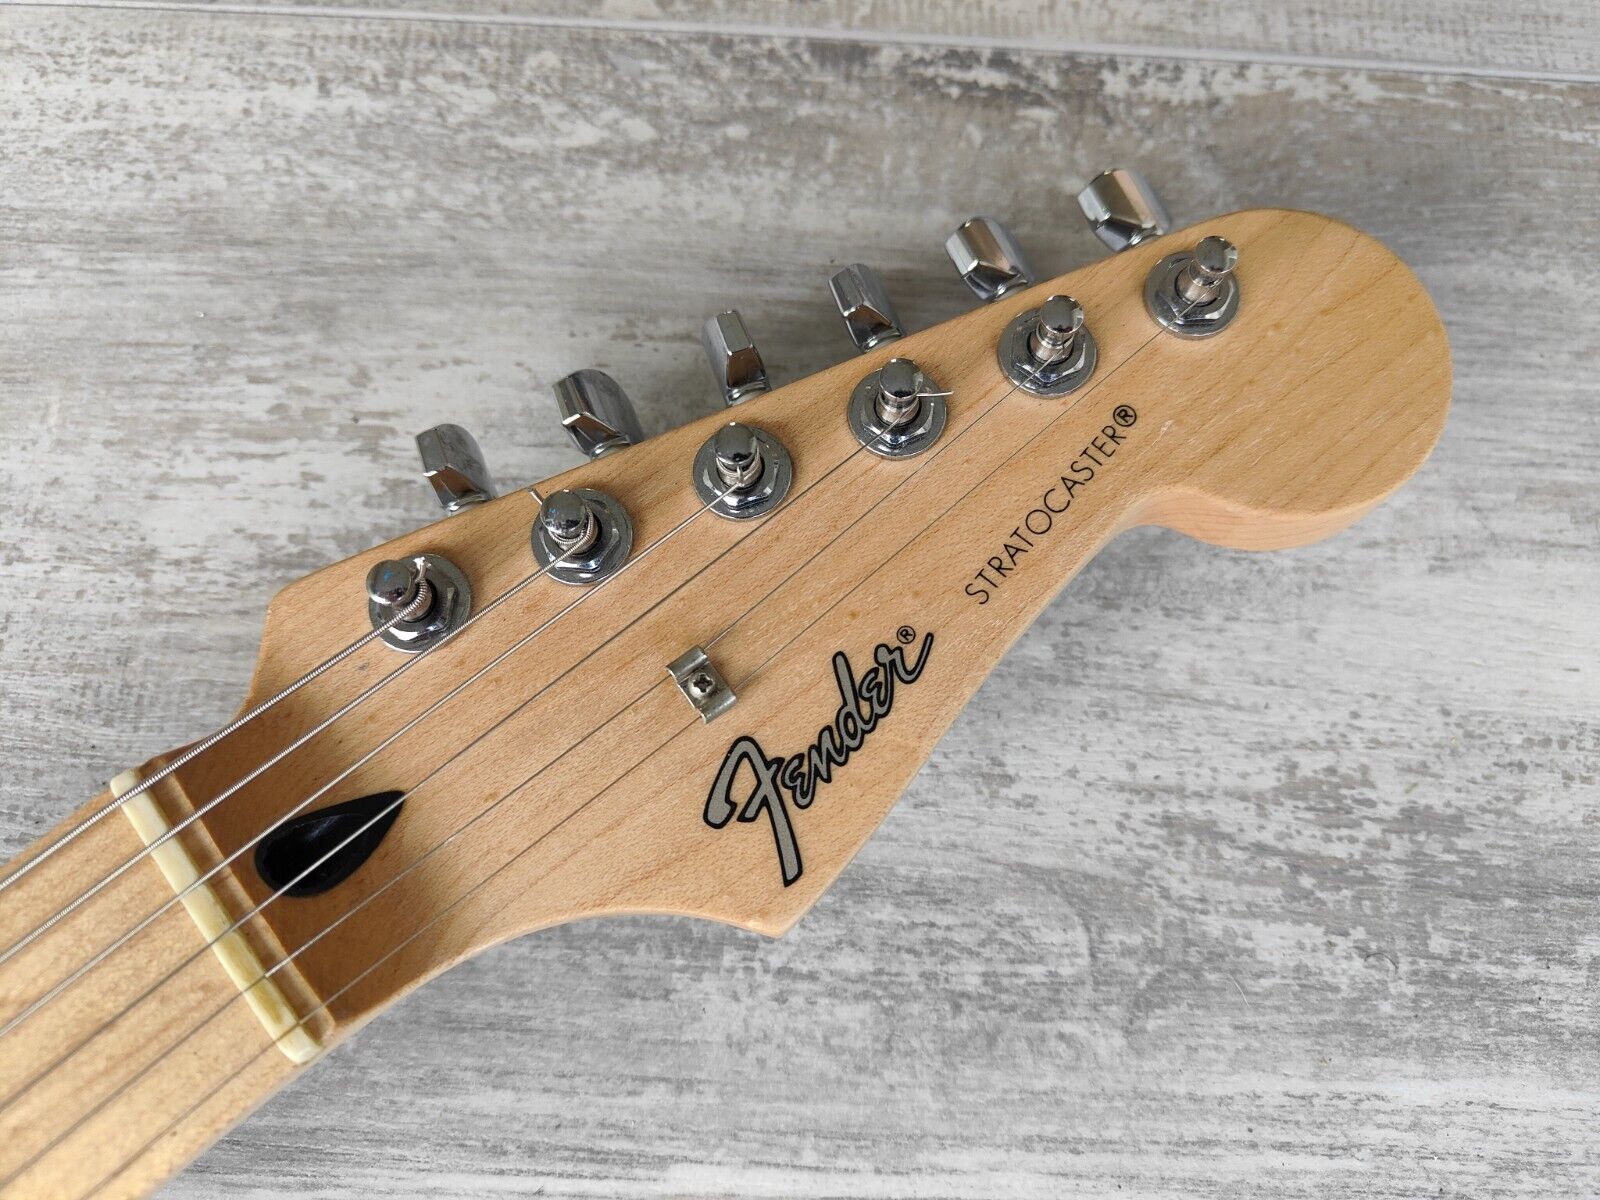 2014 Fender Japan Stratocaster Standard (Black)